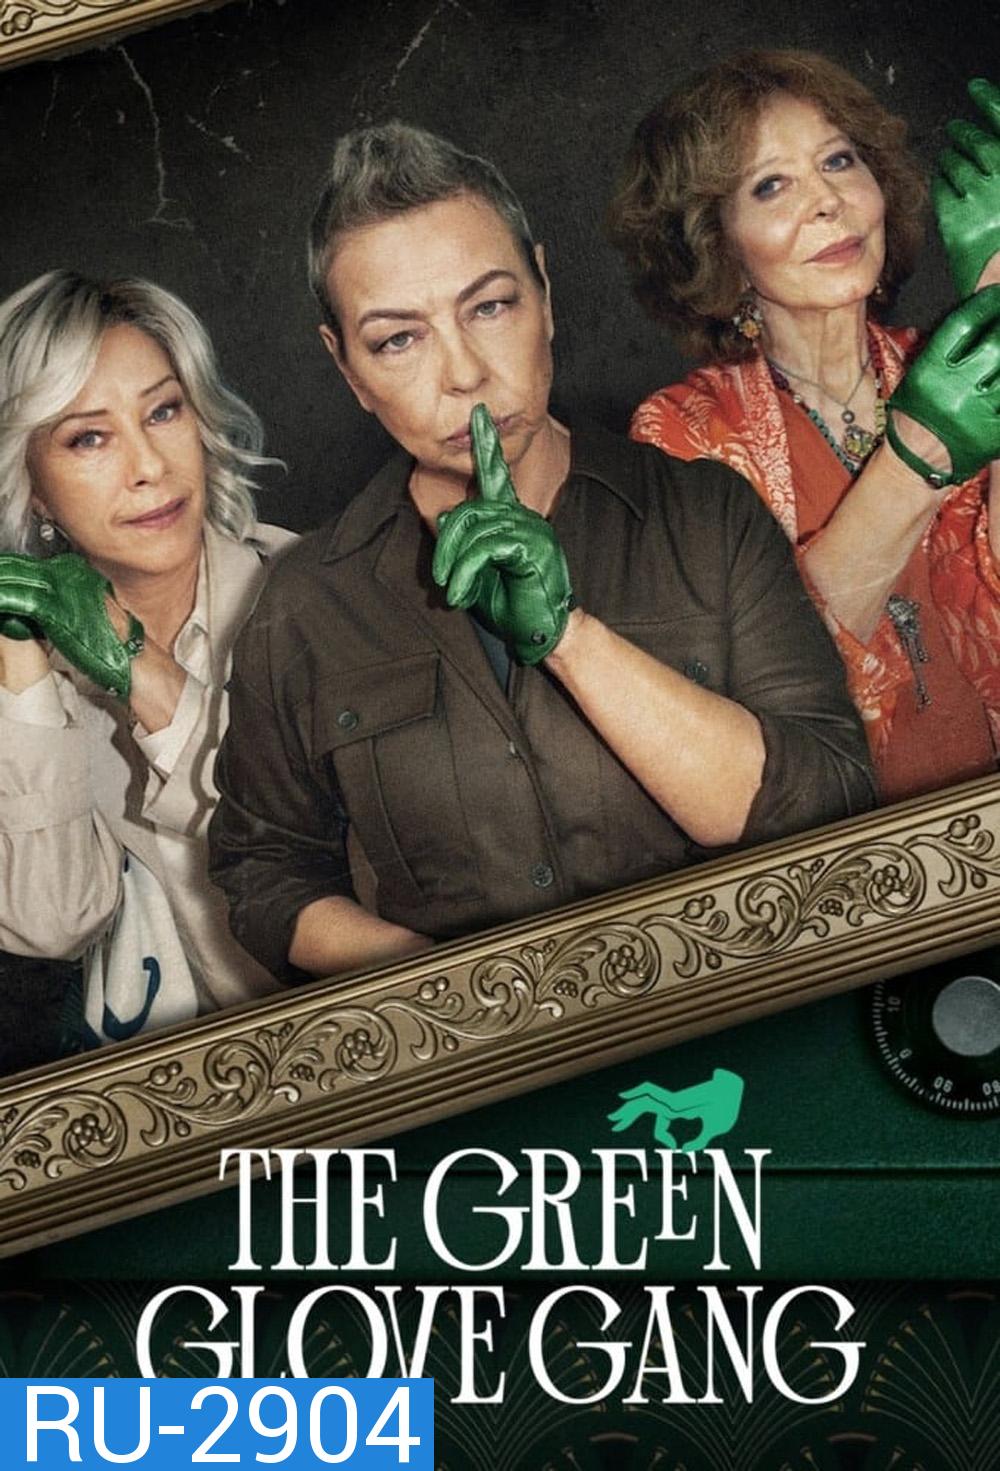 The Green Glove Gang แก๊งถุงมือเขียว (2022) 8 ตอน